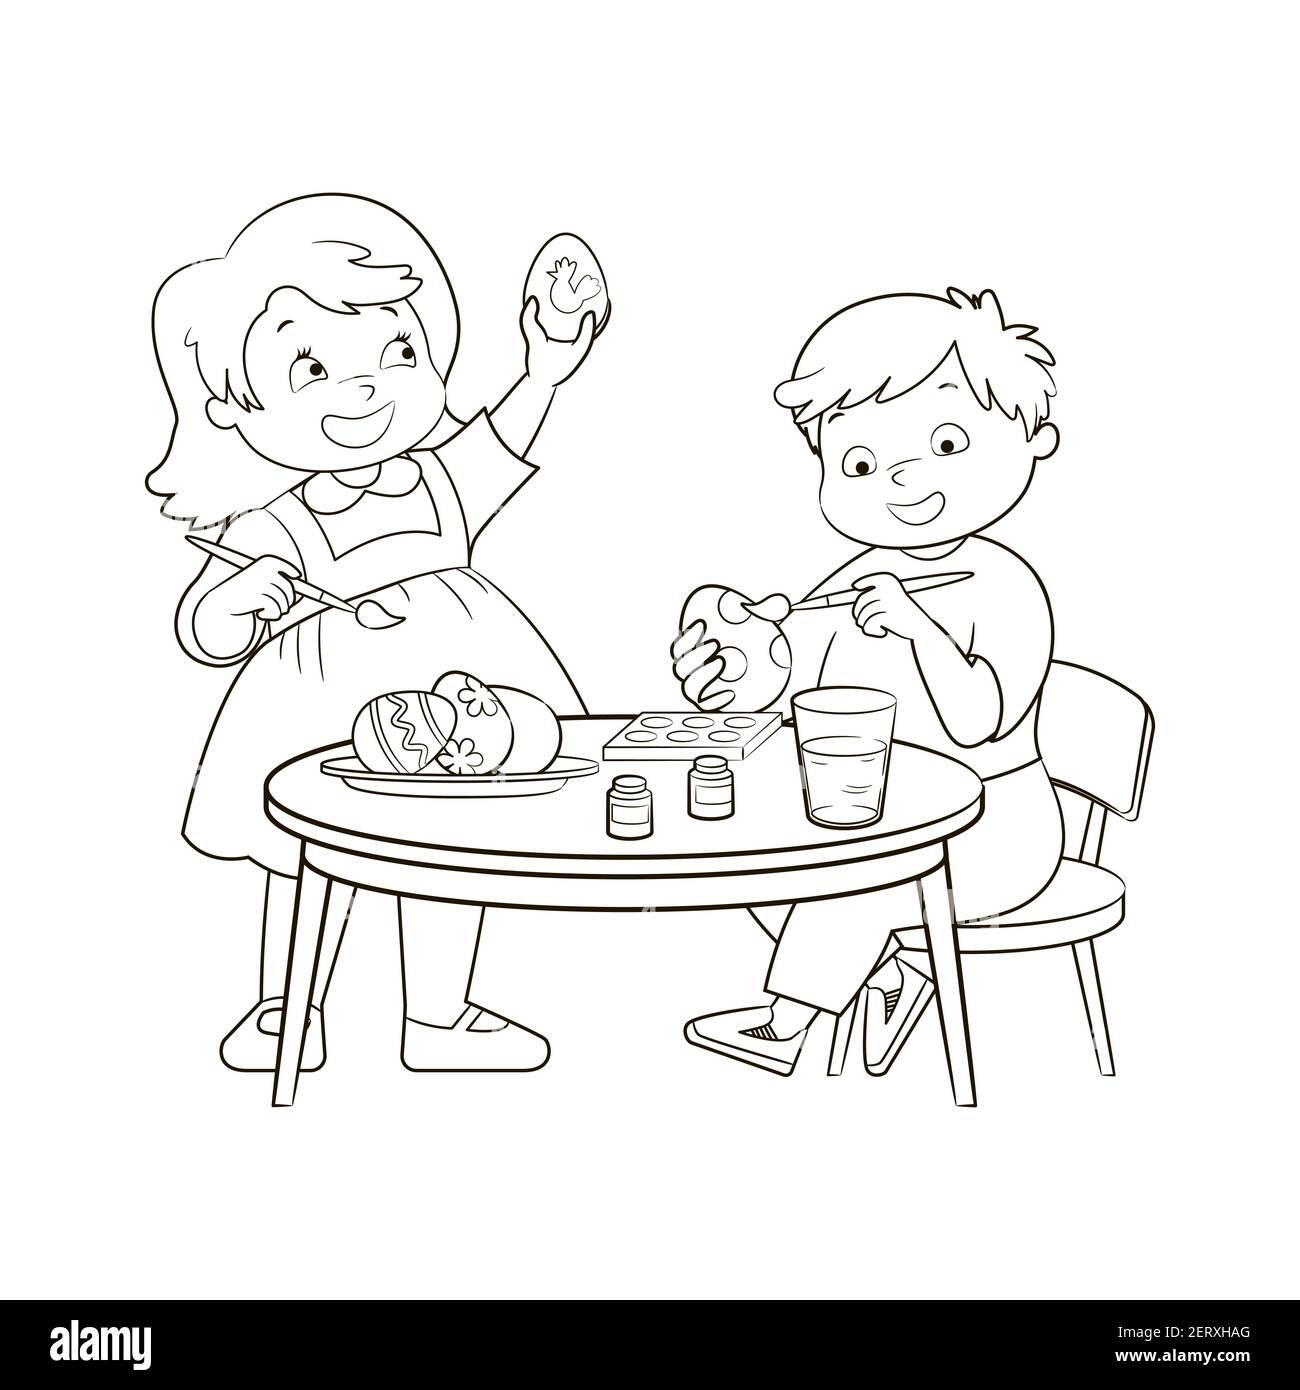 Les petits enfants, un garçon et une fille peignent des œufs de Pâques tout en étant assis à une table ronde. Livre de coloriage, illustration vectorielle, croquis noir et blanc, Illustration de Vecteur